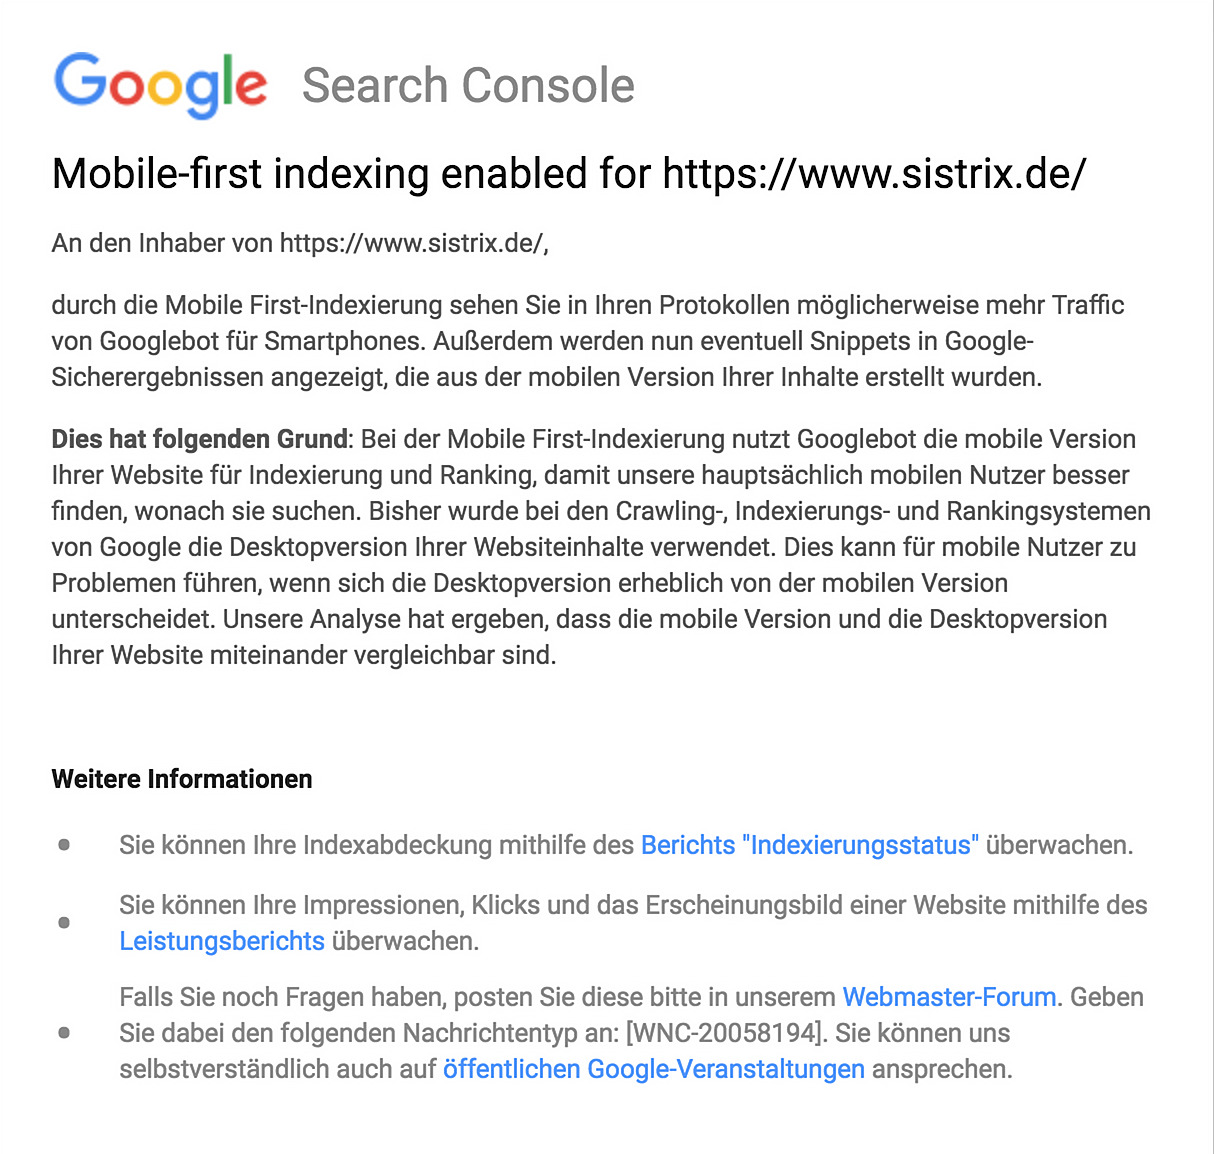 Zeigt eine Mitteilung der Google Search Console an, die die Aktivierung des Mobile-First Index für die Website sistrix.de ankündigt.